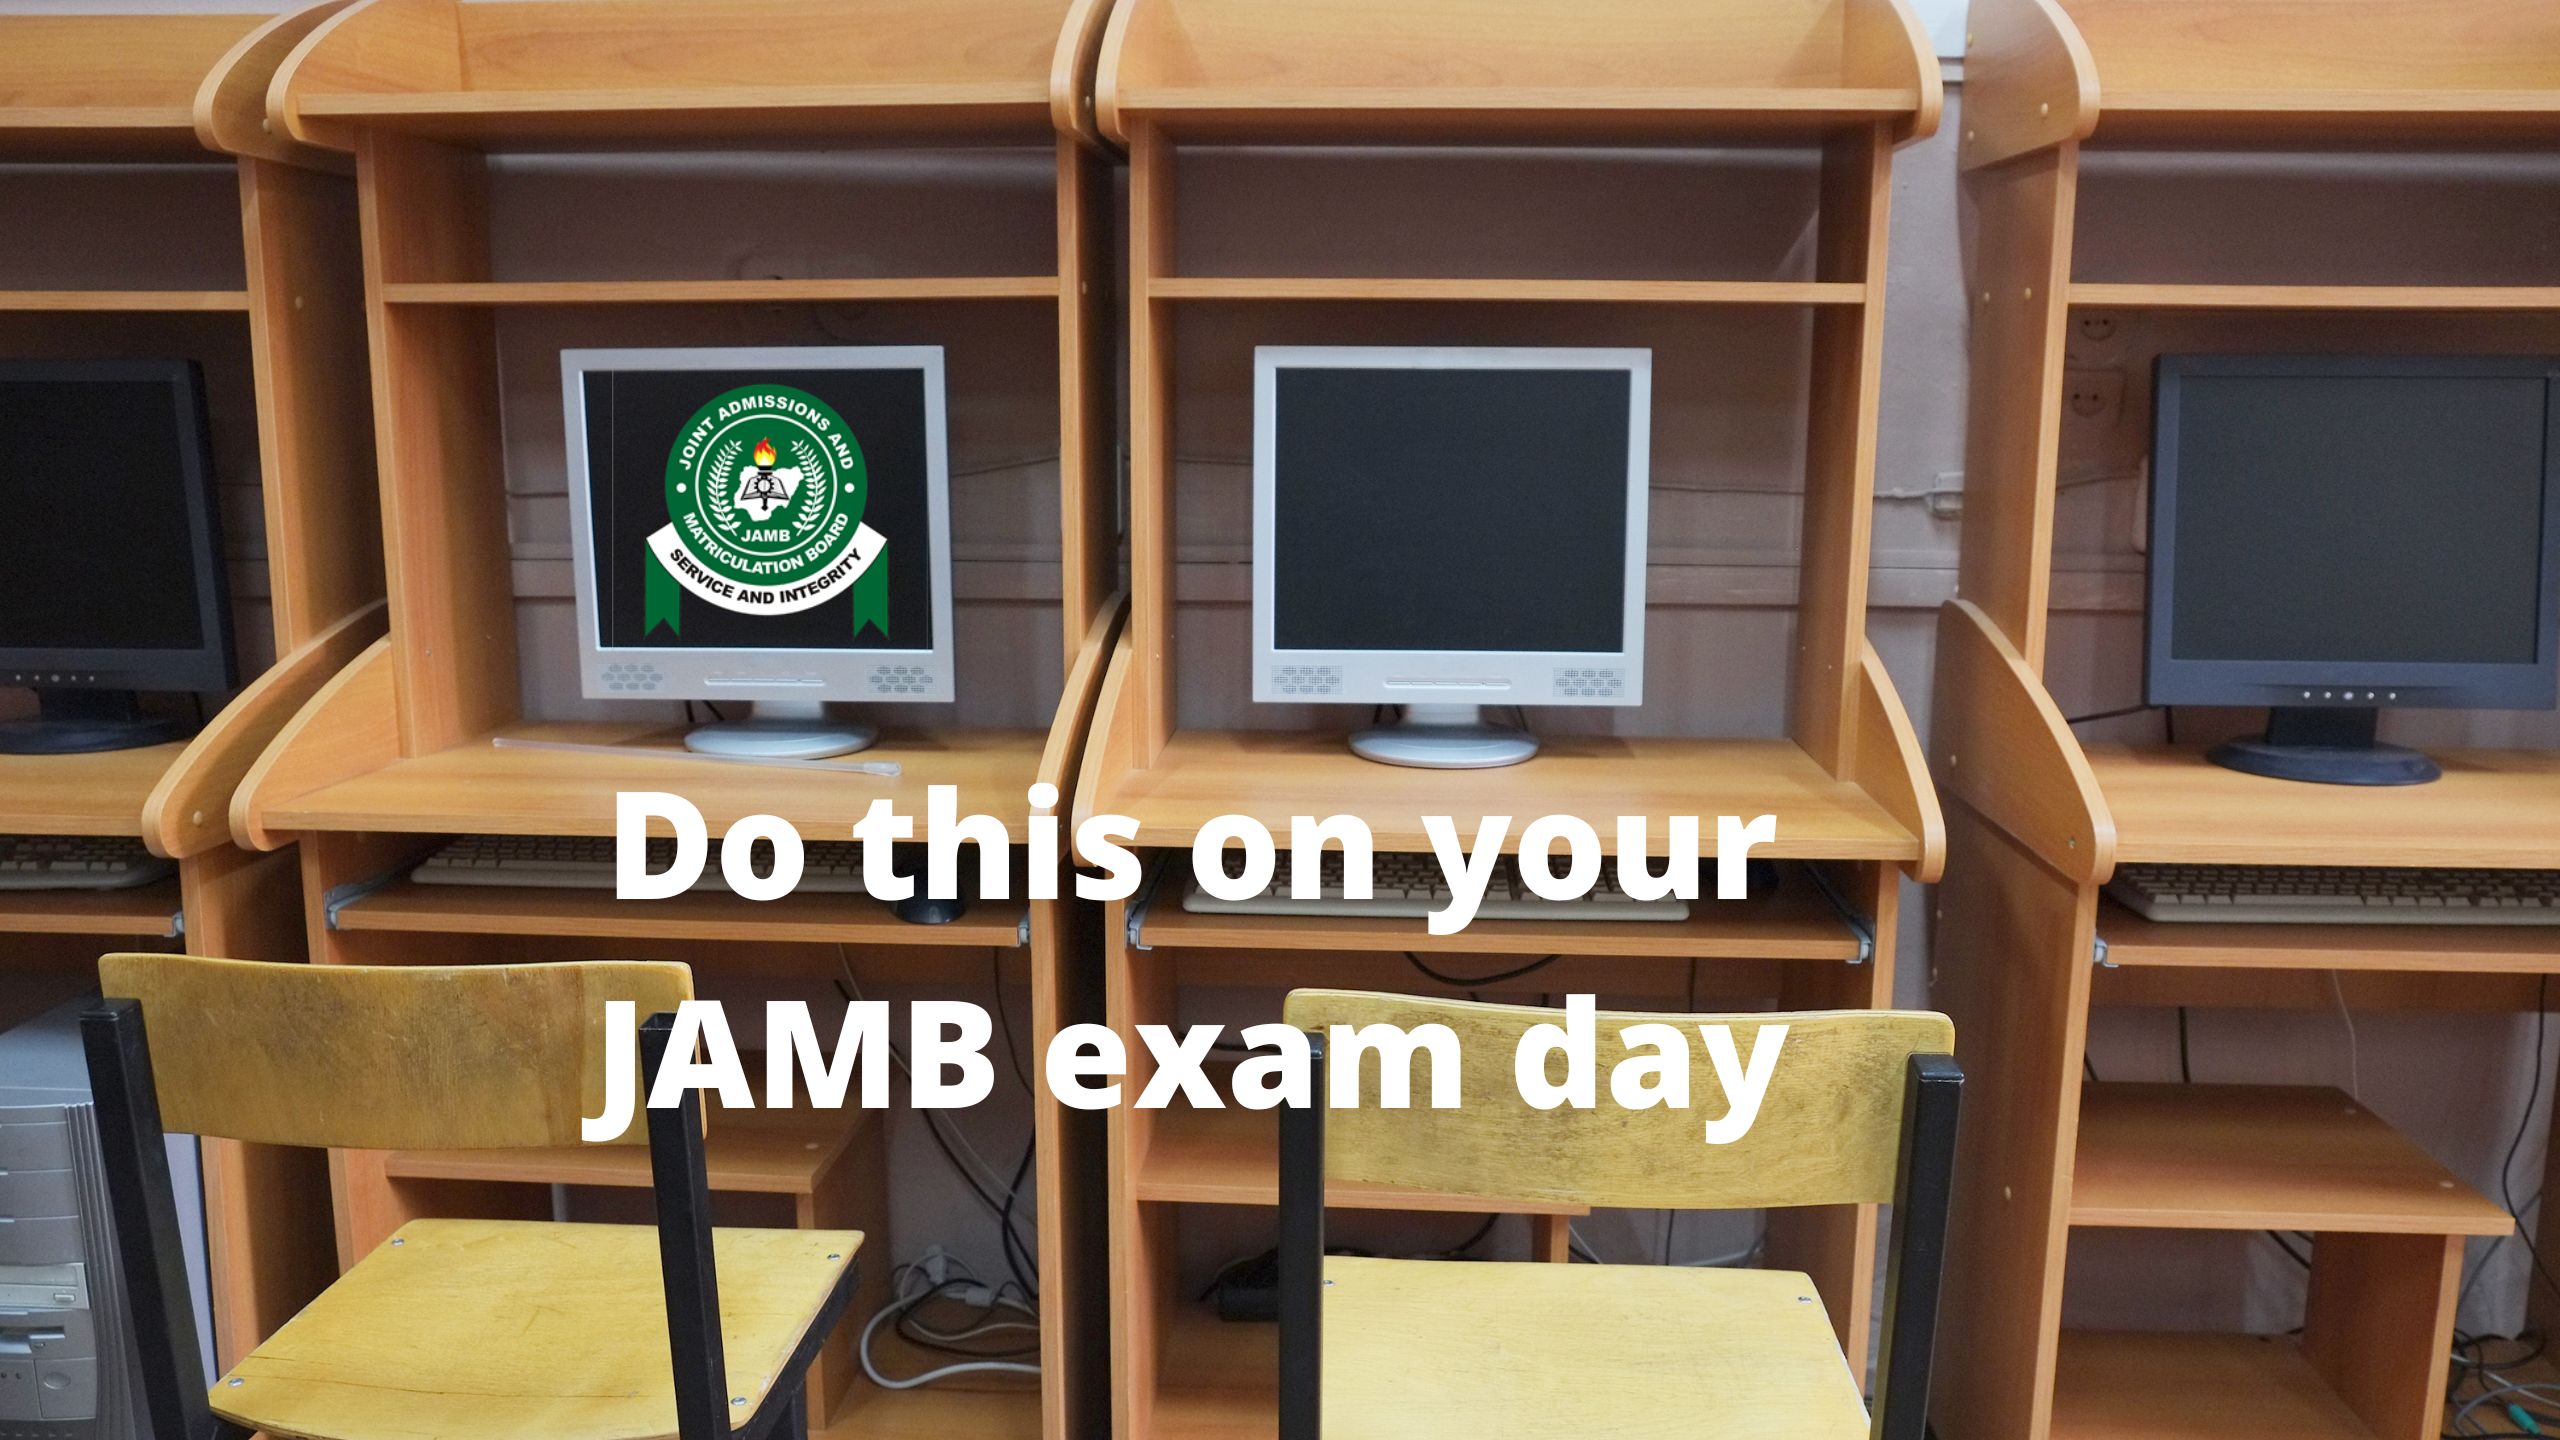 JAMB exam day